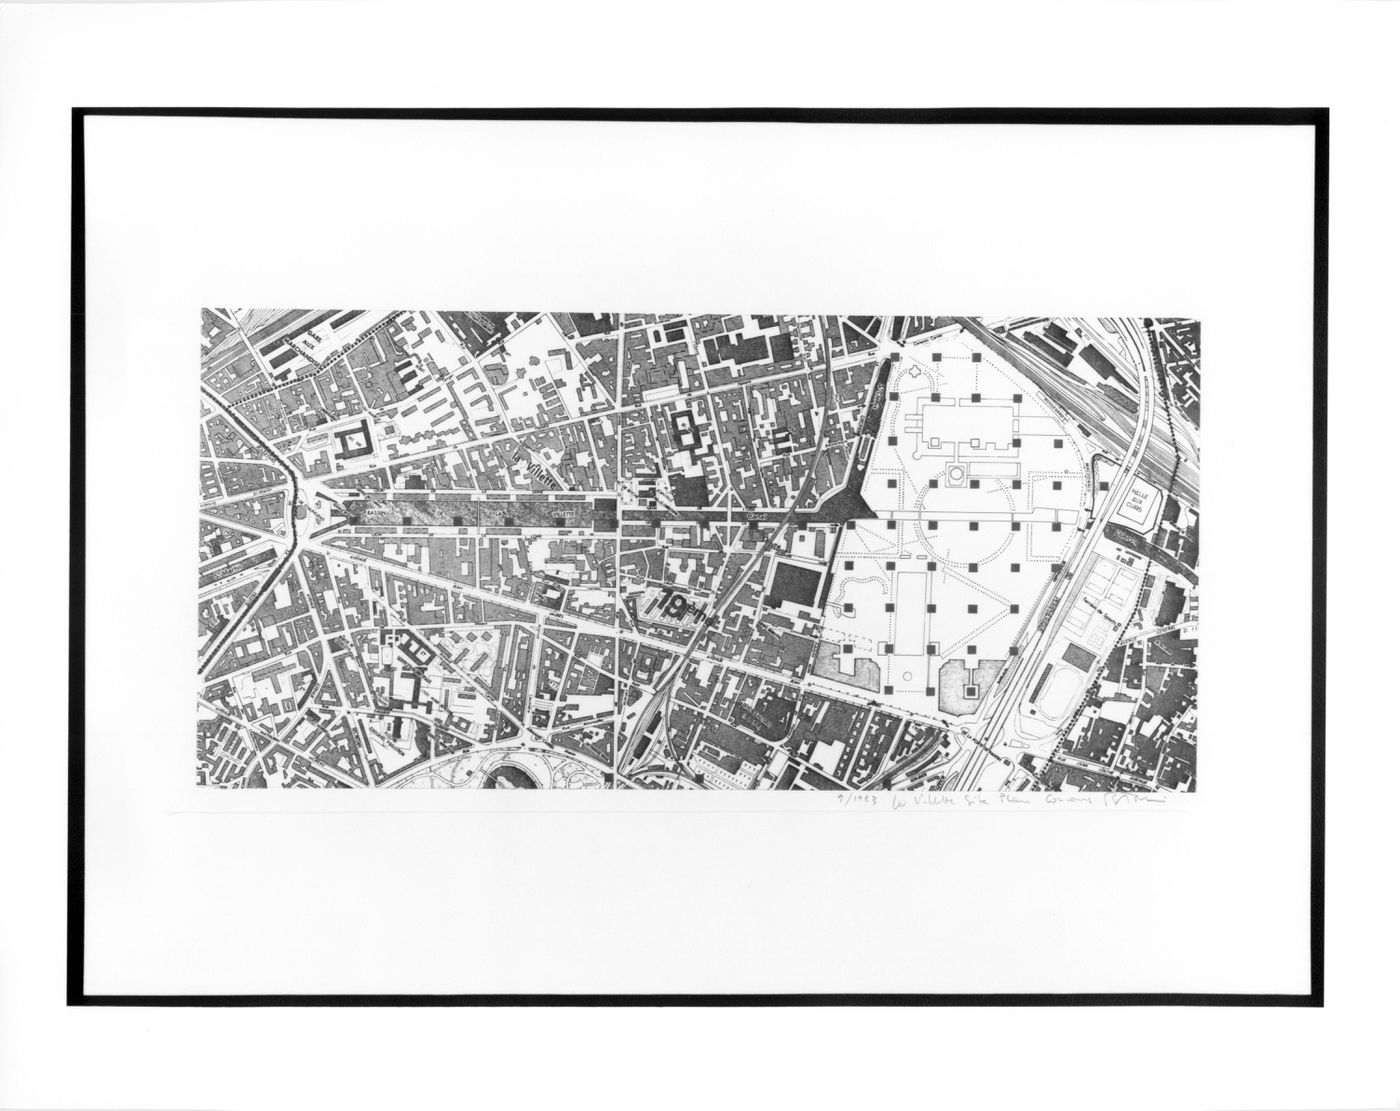 Project for a Garden, Parc de la Villette, Paris: Grid of follies superposed on the Parc de La Villette site and the Canal de La Villette